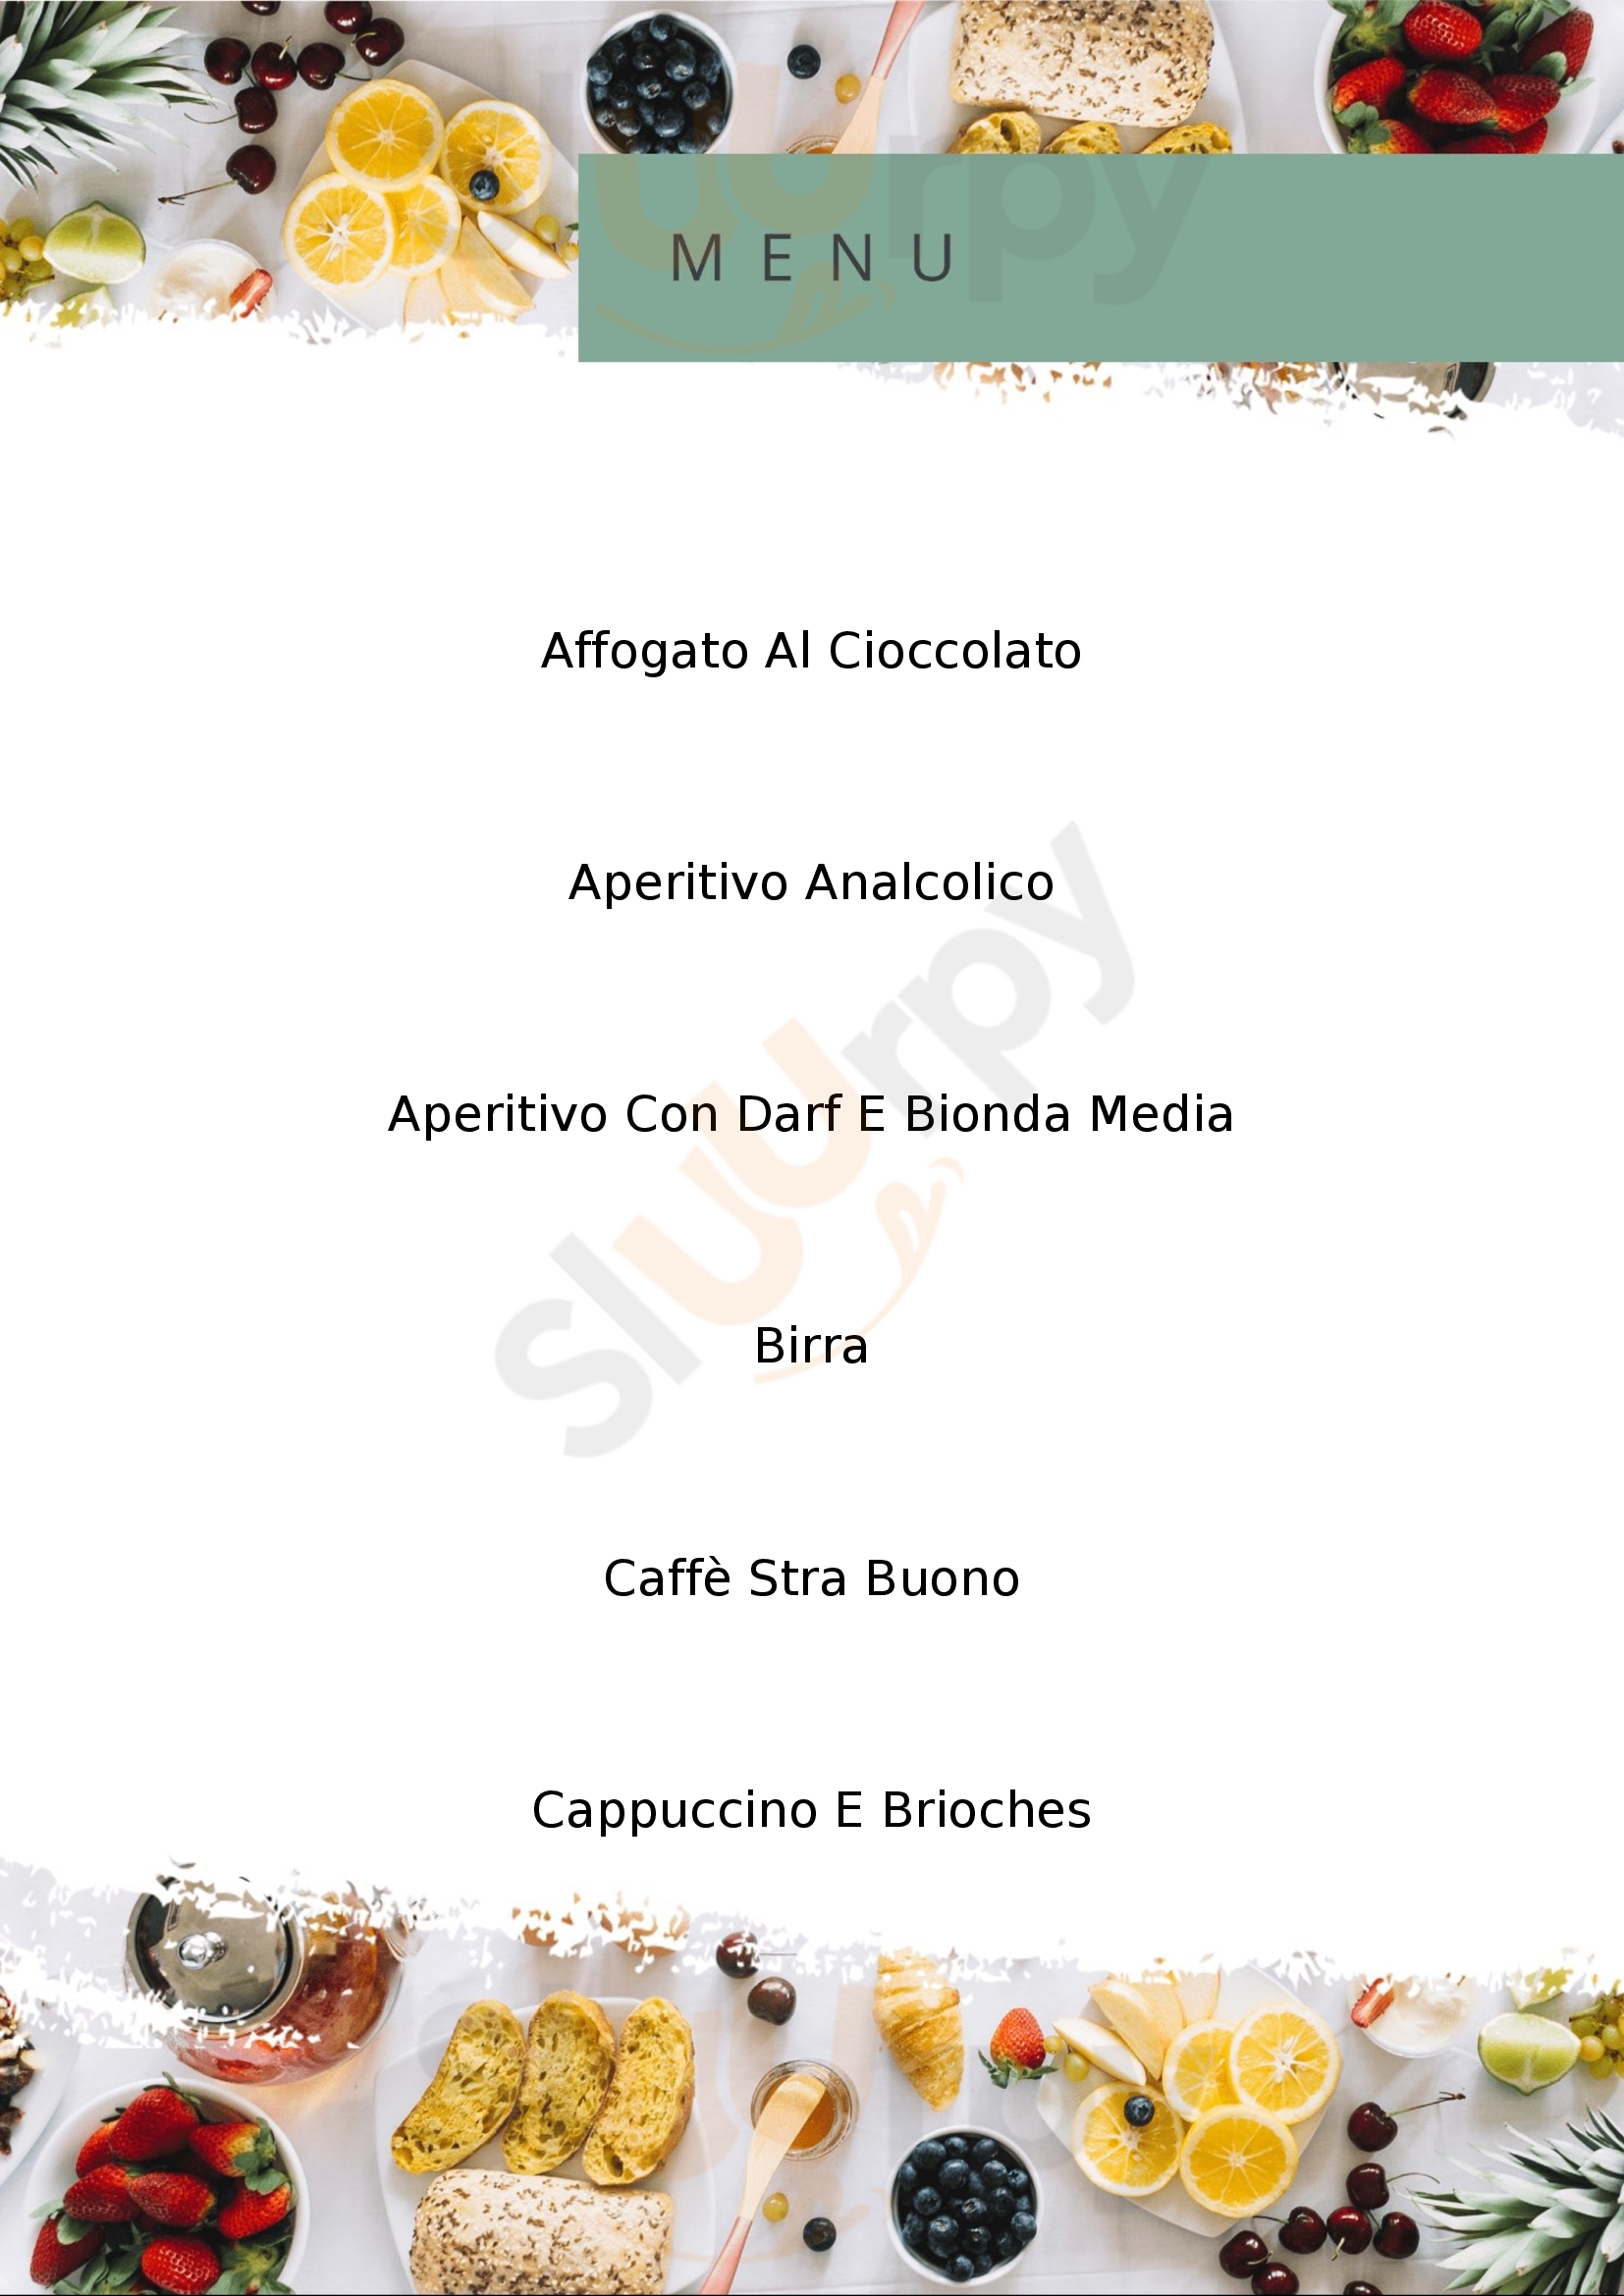 Caffè Autostazione Boario Terme menù 1 pagina